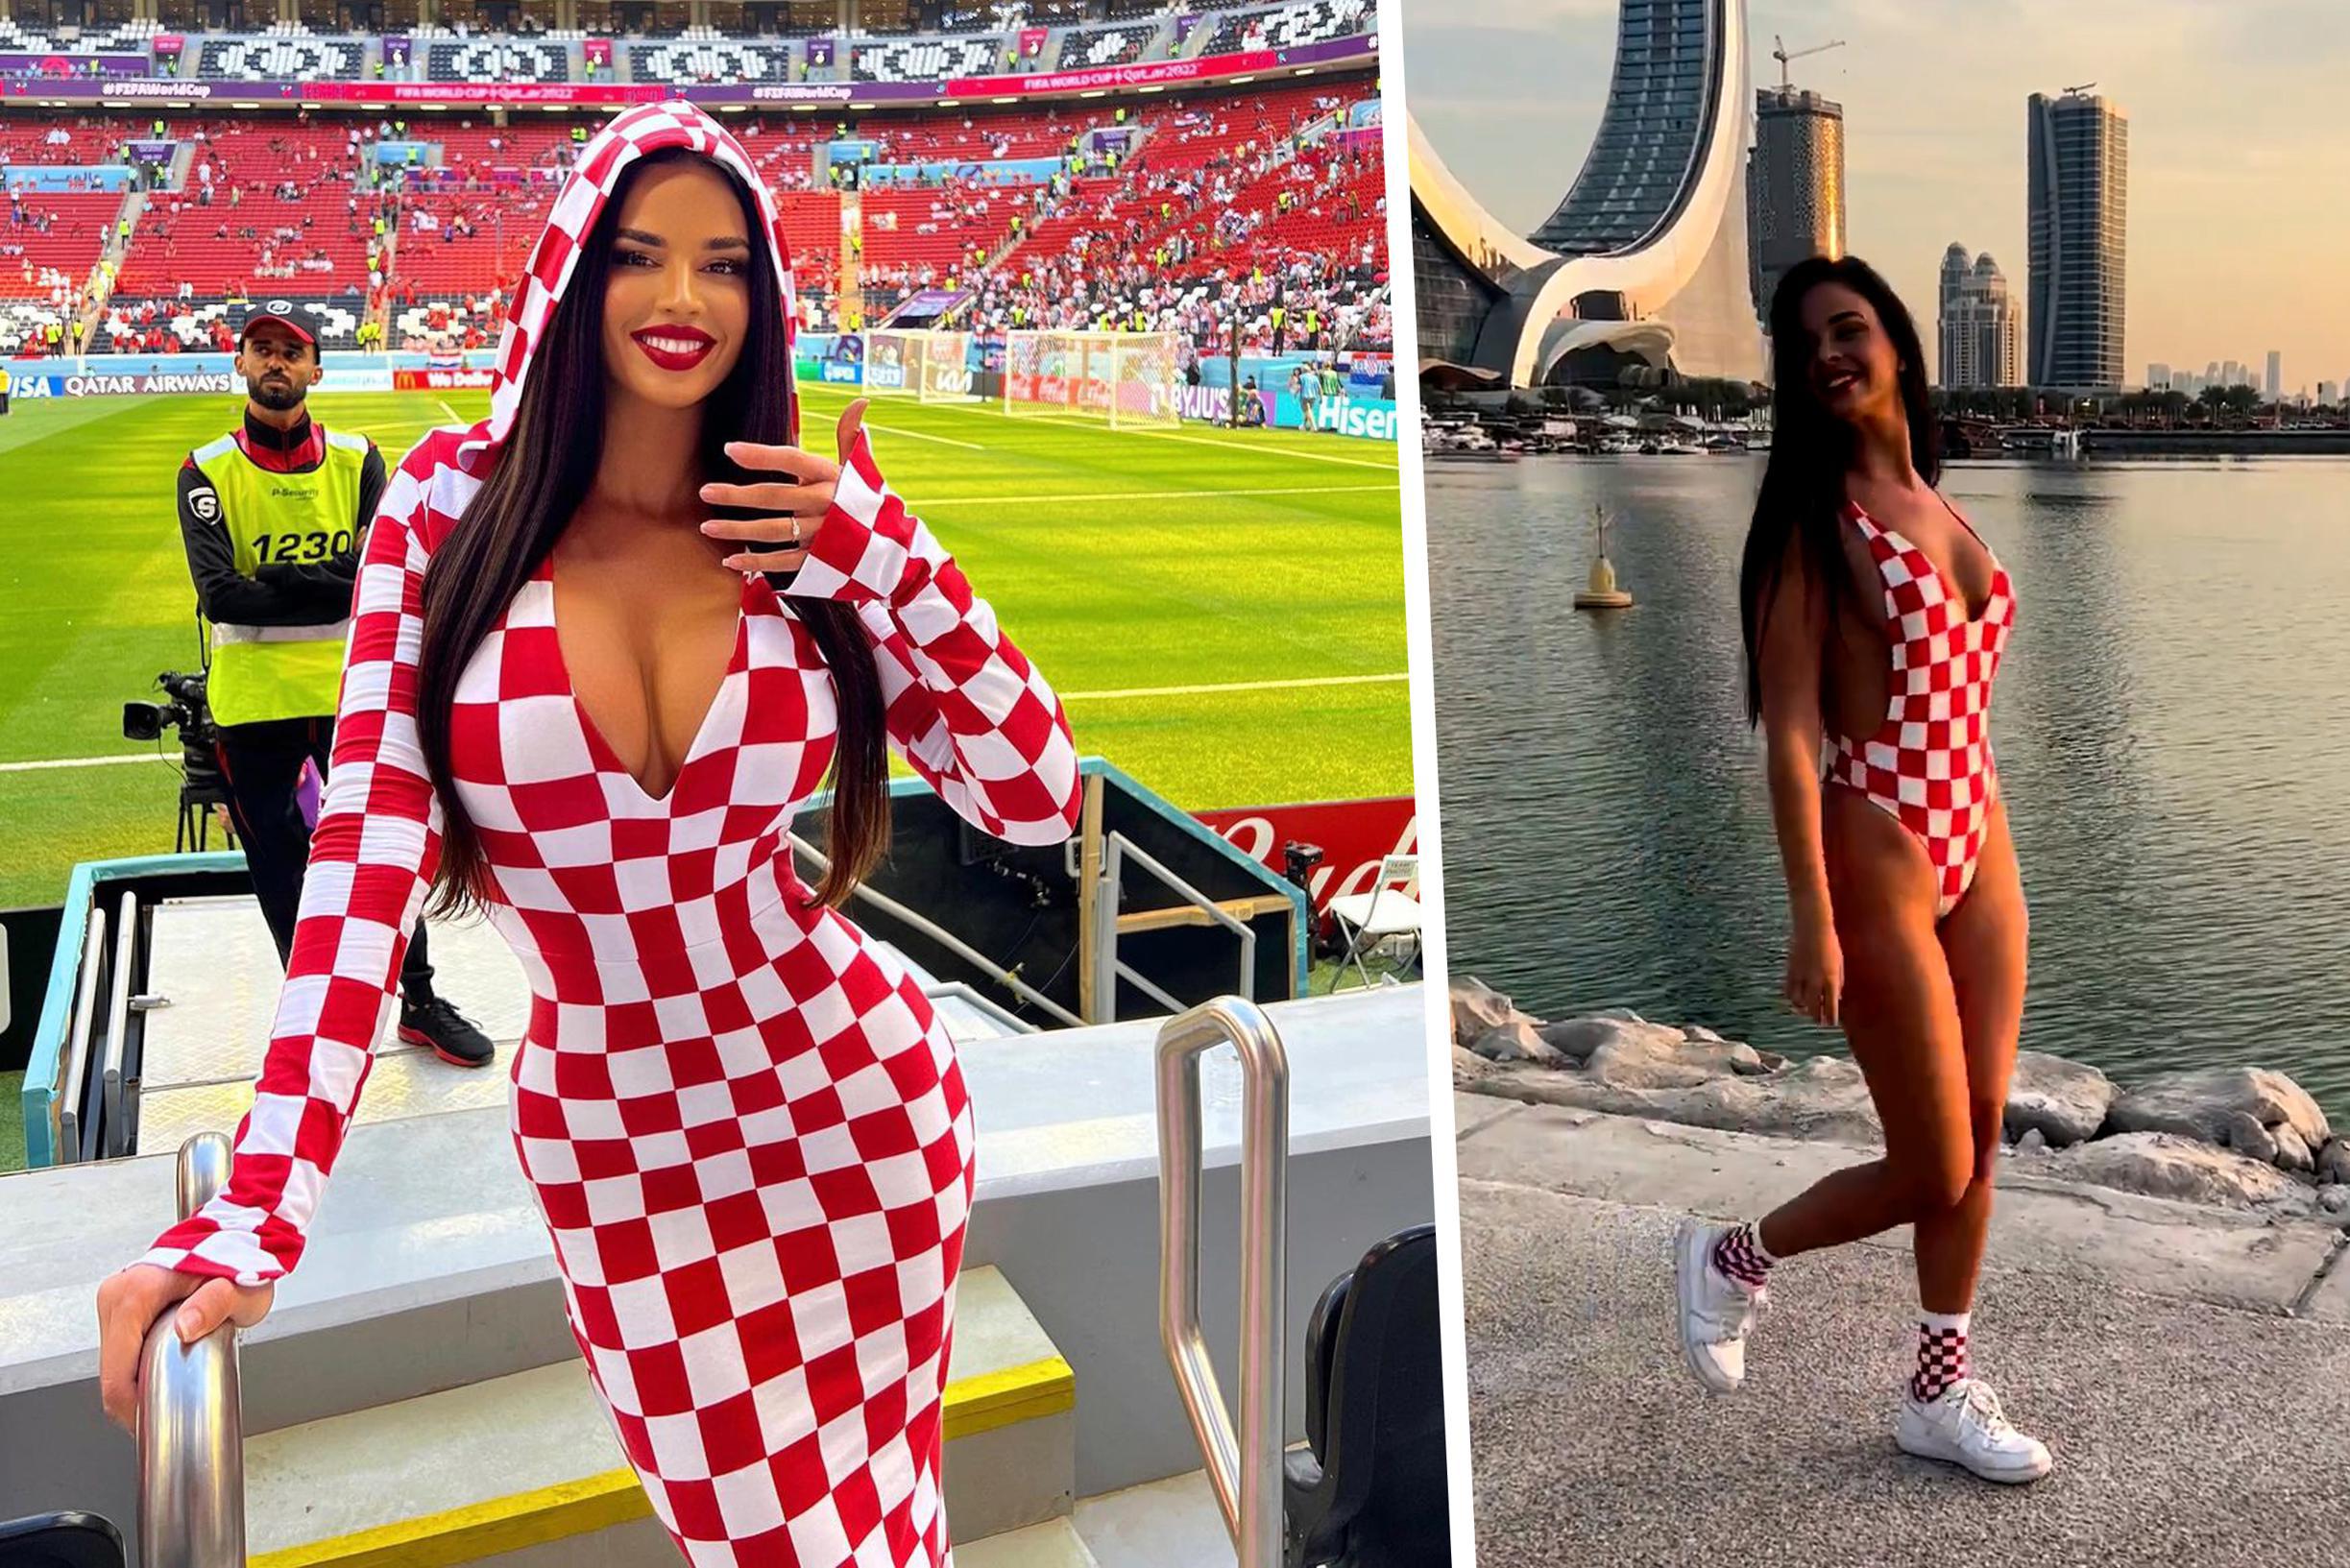 “Knapste fan” van WK krijgt kritiek nadat ze met string door Qatar loopt: “Heb wat respect voor onze cultuur”